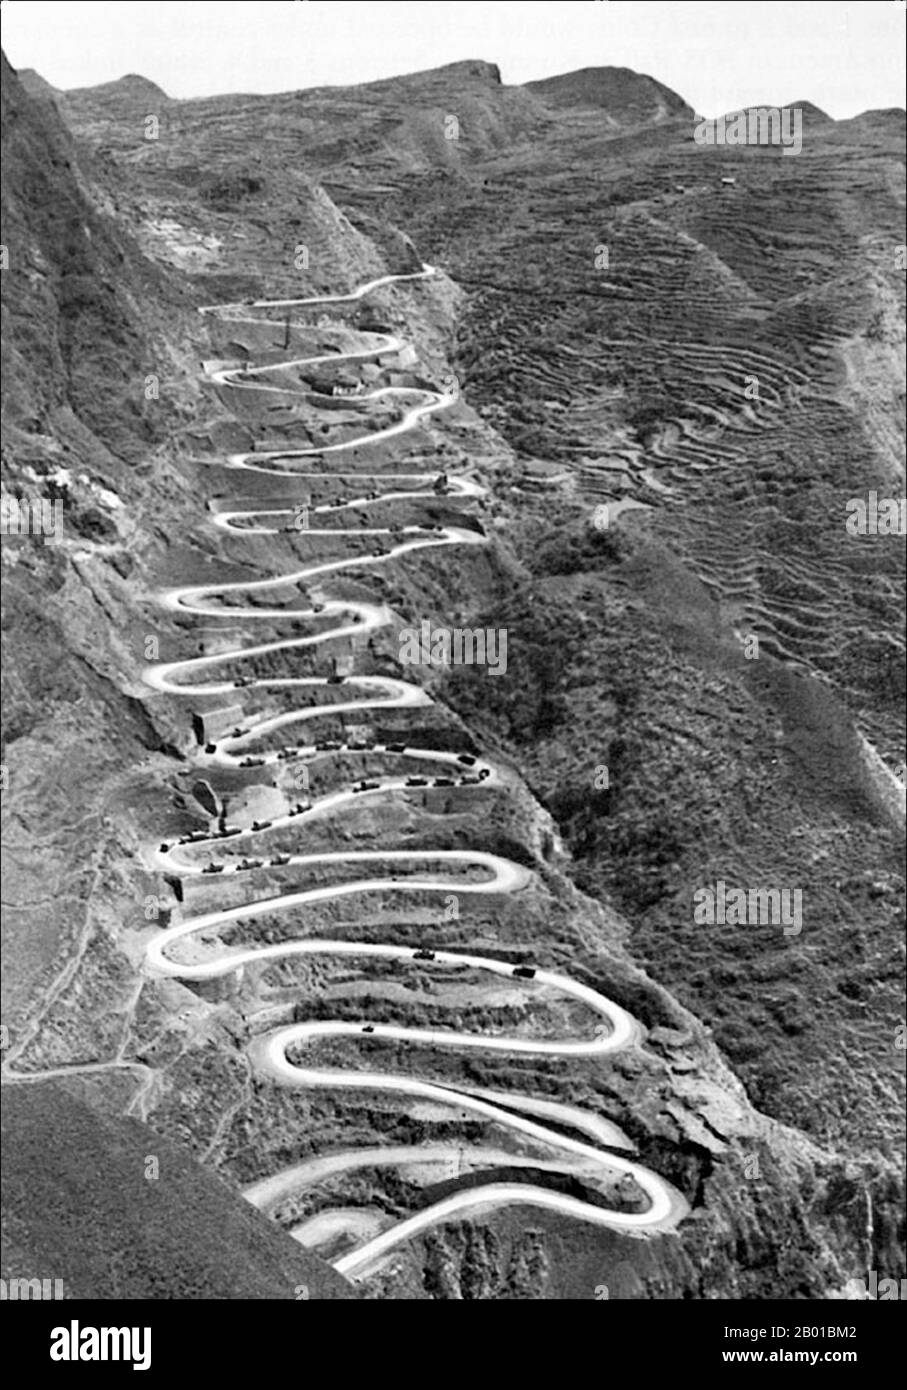 Birmania/Myanmar/Cina: Un convoglio di camion militari su un tratto della strada della Birmania, c. 1945. La strada della Birmania è una strada che collega la Birmania (chiamata anche Myanmar) con la Cina. I suoi terminali sono Kunming, Yunnan, e Lashio, Birmania. Quando fu costruita, la Birmania era una colonia britannica sotto l'occupazione giapponese. La strada è lunga 1.154 km (717 miglia) e attraversa la campagna di montagna. Le sezioni da Kunming al confine birmano furono costruite da 200.000 operai cinesi durante la seconda guerra sino-giapponese nel 1937 e completate nel 1938. Ebbe un ruolo nella seconda guerra mondiale, quando gli inglesi usarono la strada della Birmania. Foto Stock